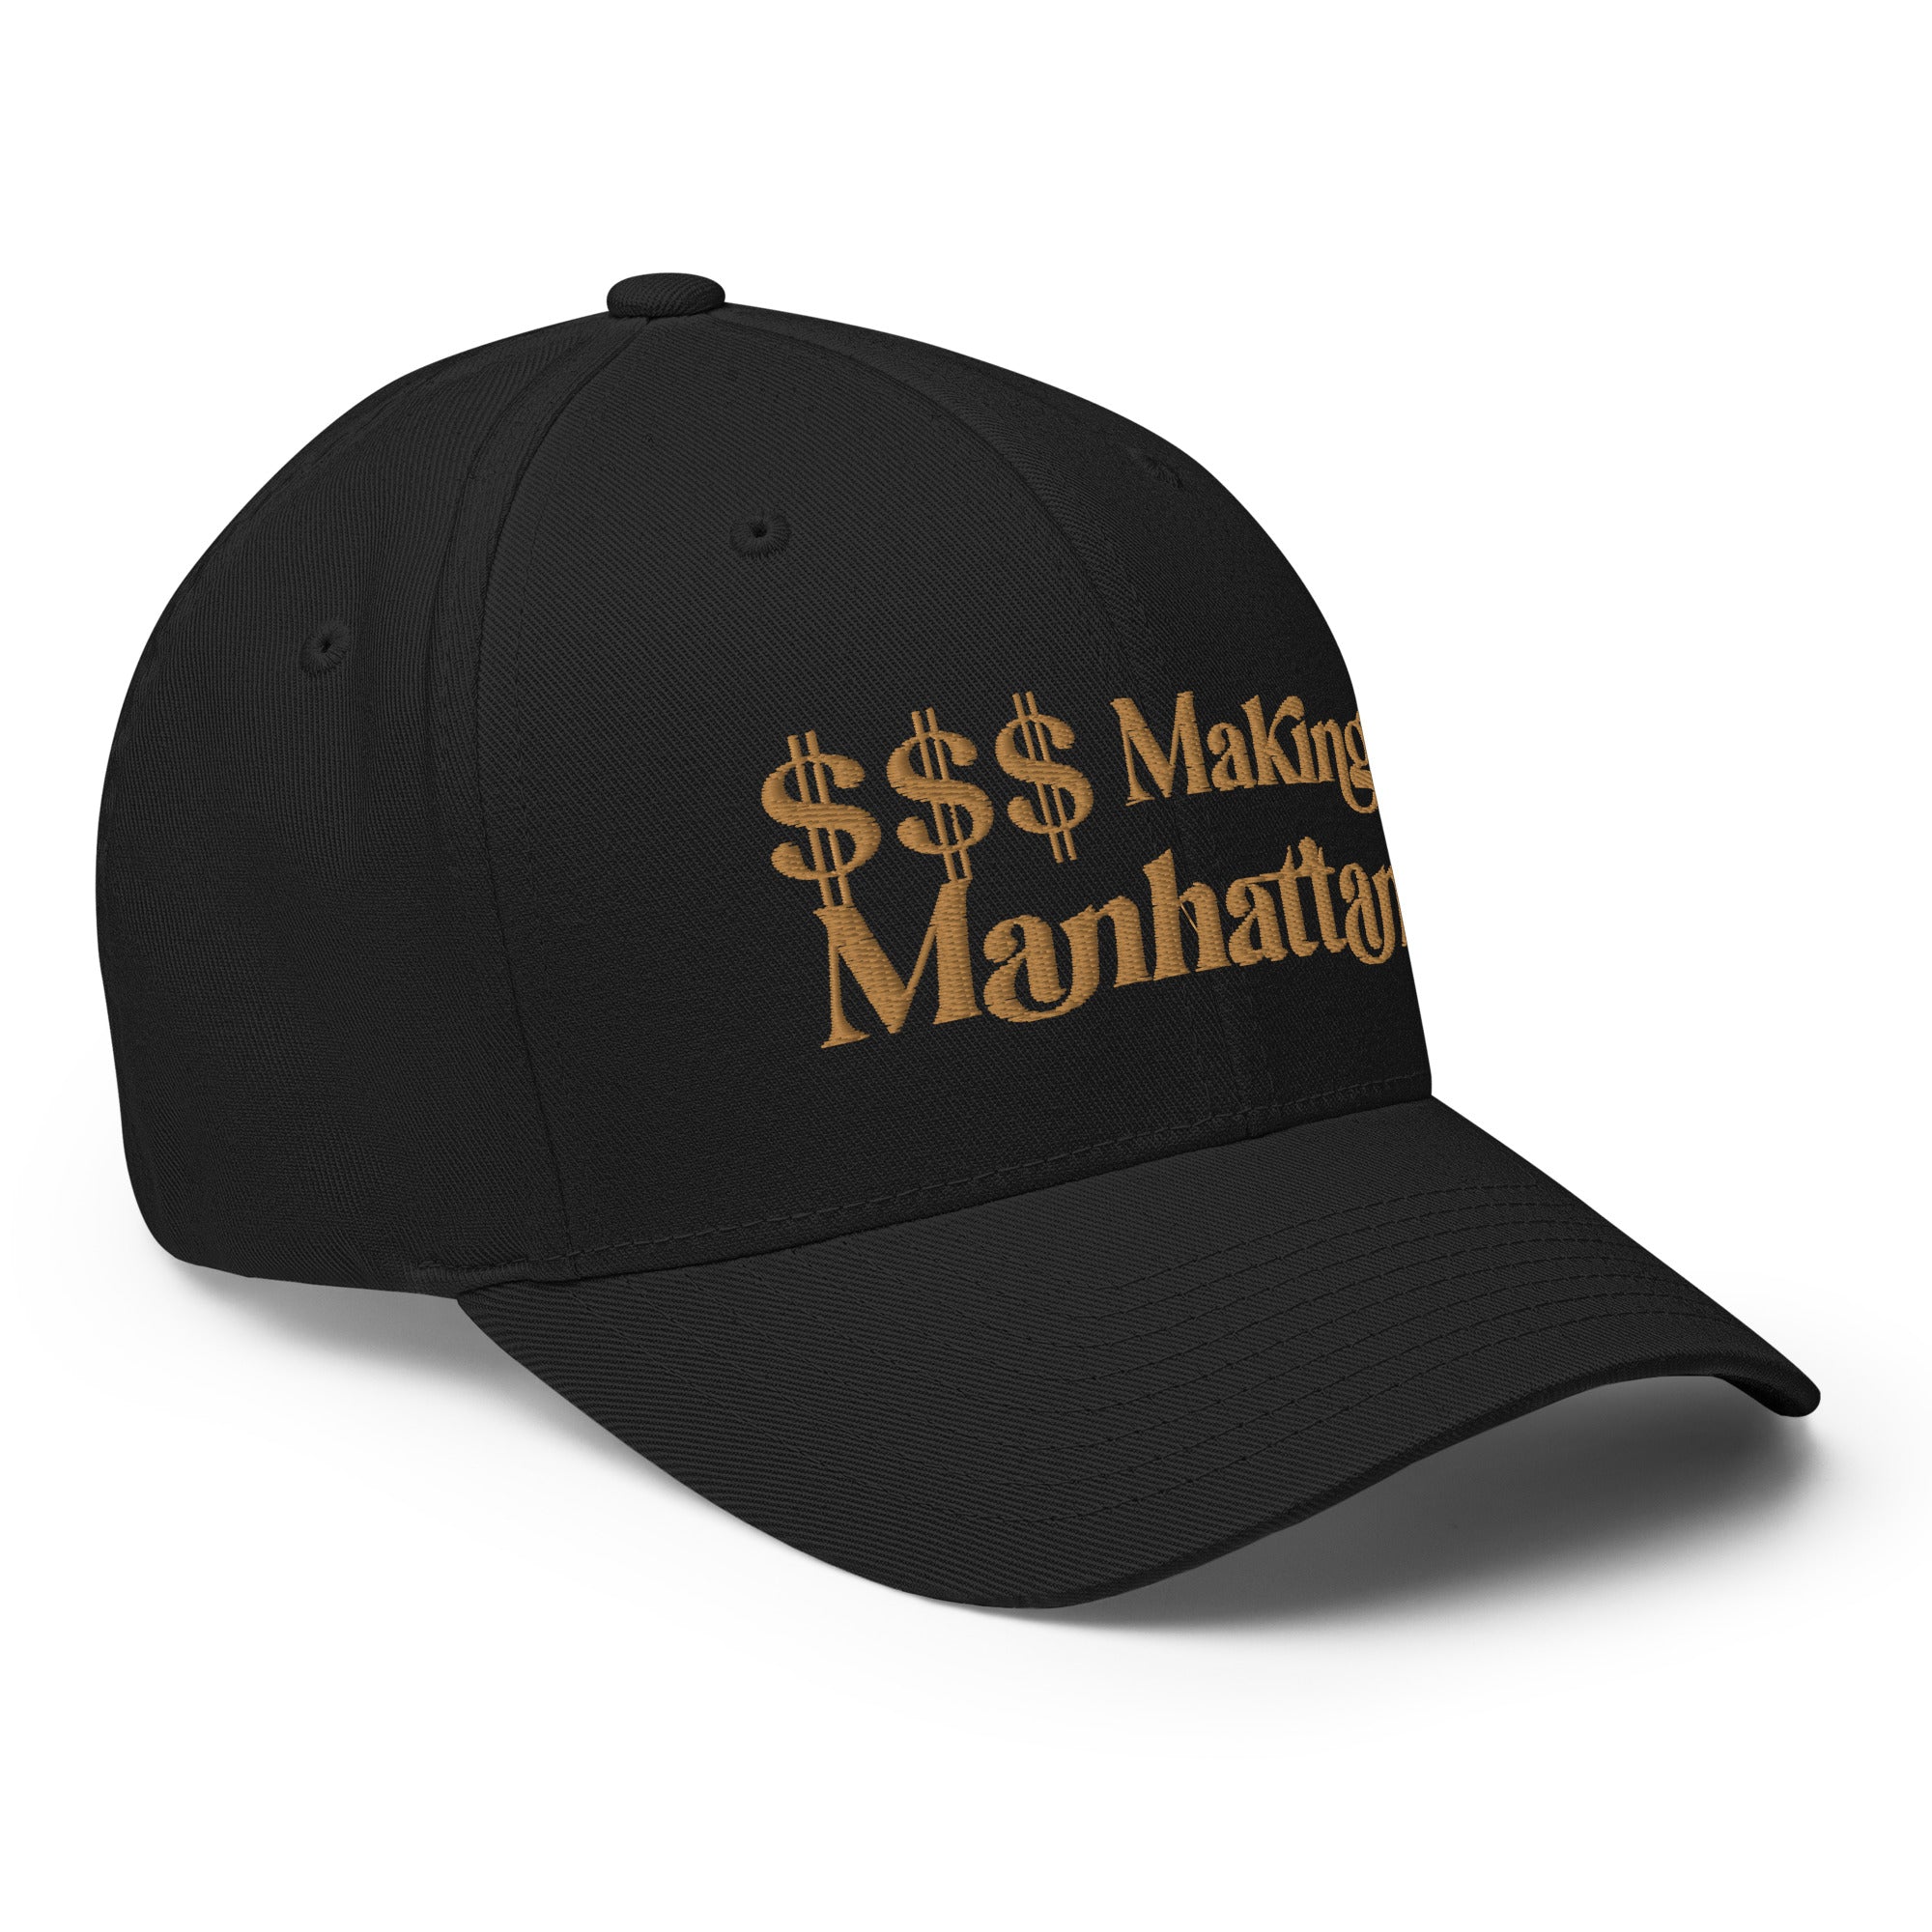 Money Manhattan - Structured Twill Cap